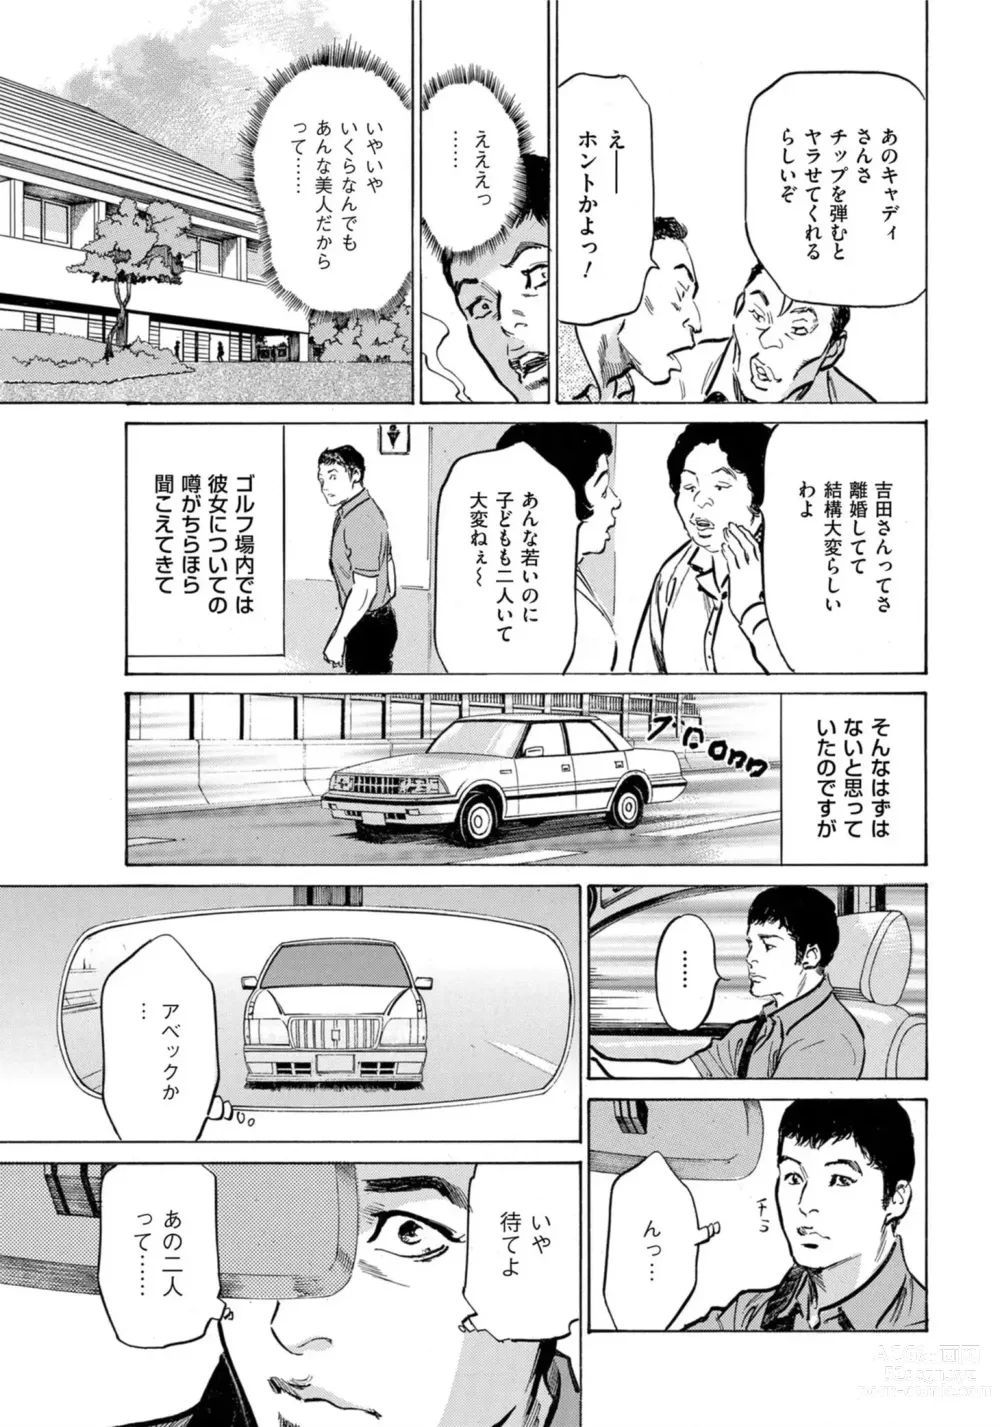 Page 6 of manga Hontou ni Atta Omowazu Zawatsuku Totteoki no Hanashi 14 episodes